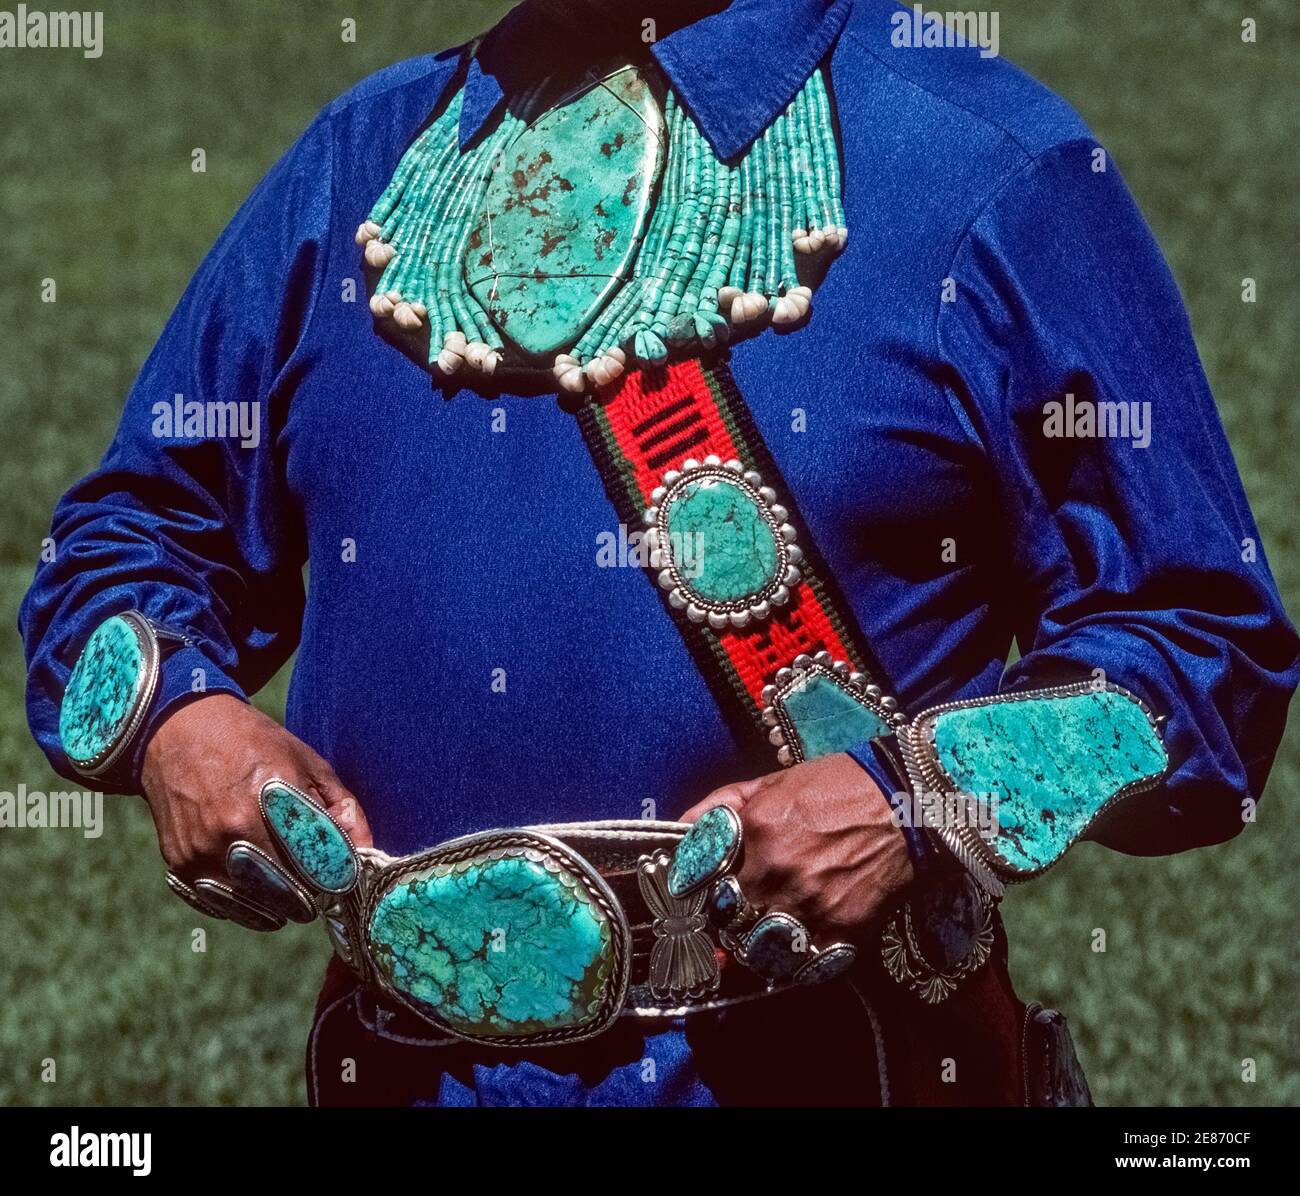 Ce magnifique bijou indien turquoise et argenté a été fabriqué et porté par un amérindien de Zuni Pueblo à Albuquerque, Nouveau-Mexique, États-Unis. Les pierres précieuses colorées bleu-vert semi-précieuses de différentes formes et tailles ont été façonnées par l'artisan indien artistique en un collier, des bracelets, des bagues, une boucle de ceinture et un bandolier accrocheur porté sur sa poitrine. La joaillerie turquoise est une forme d'art qui reflète la créativité et la culture des Amérindiens au fil des siècles, en particulier les membres de trois tribus indiennes dans le sud-ouest des États-Unis, les Navajo, Hopi et Zuni. Banque D'Images